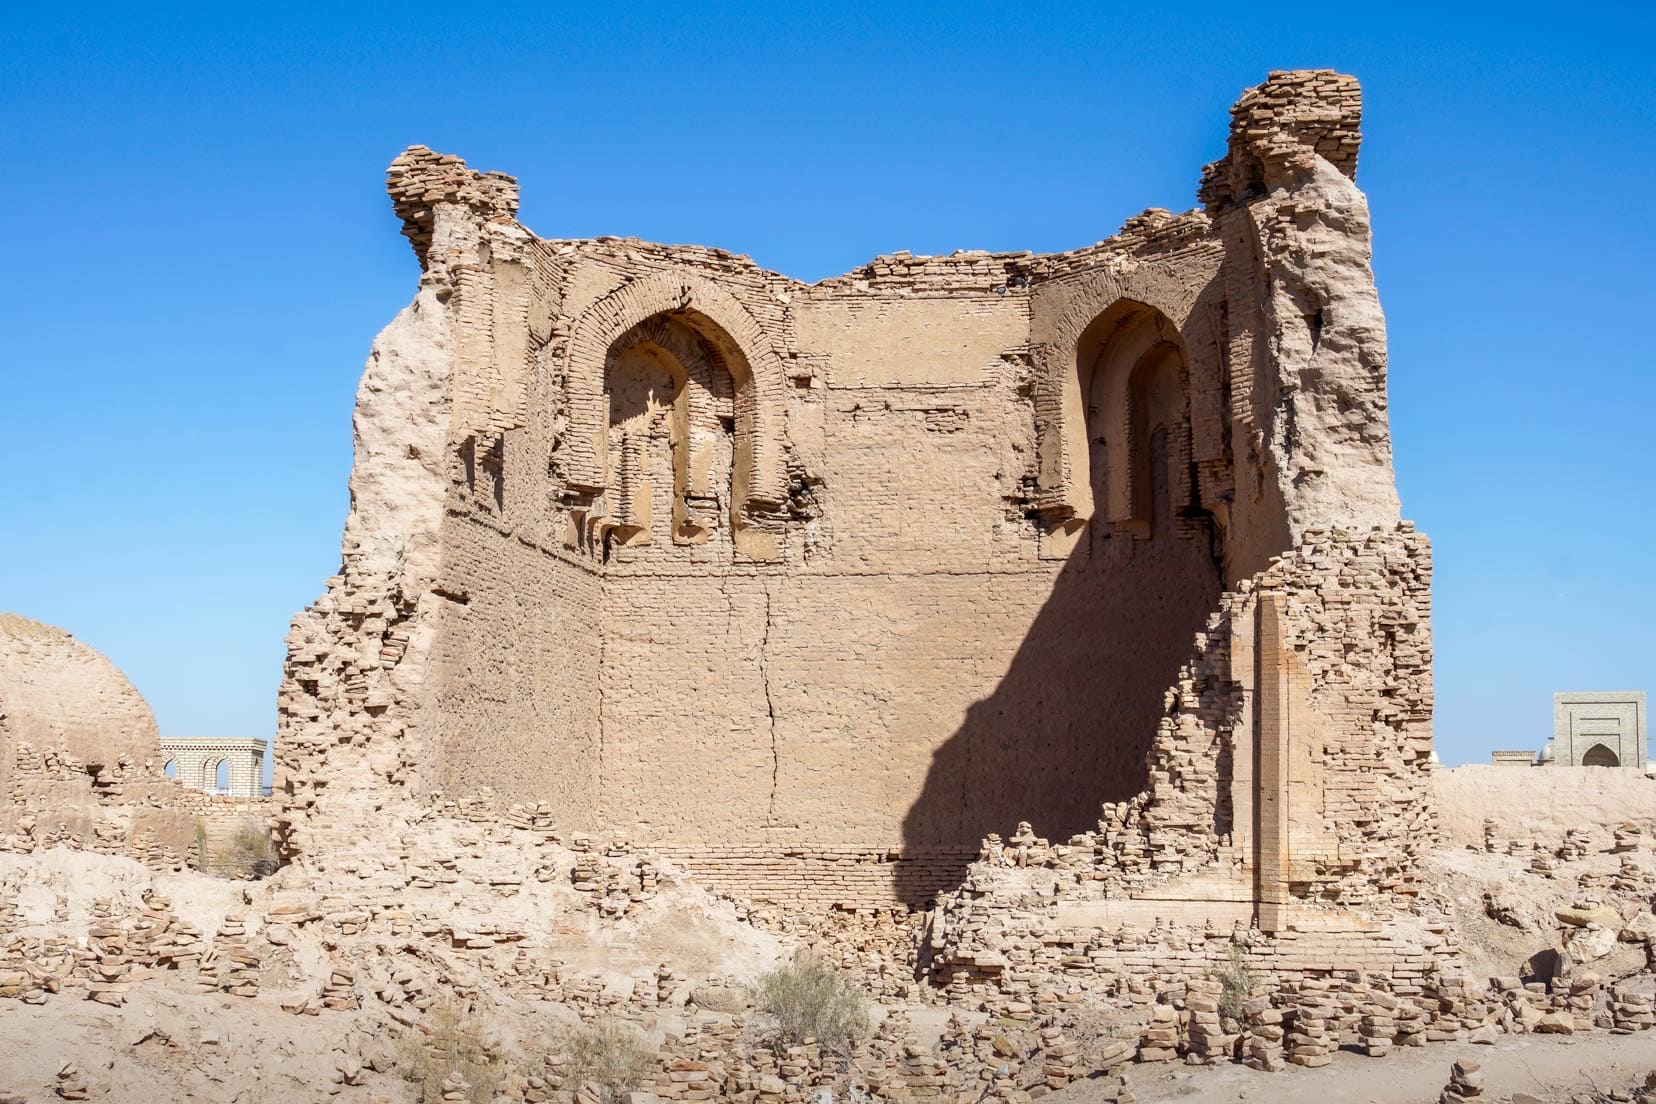 Erejep Caliph Mausoleum crumbling ruins